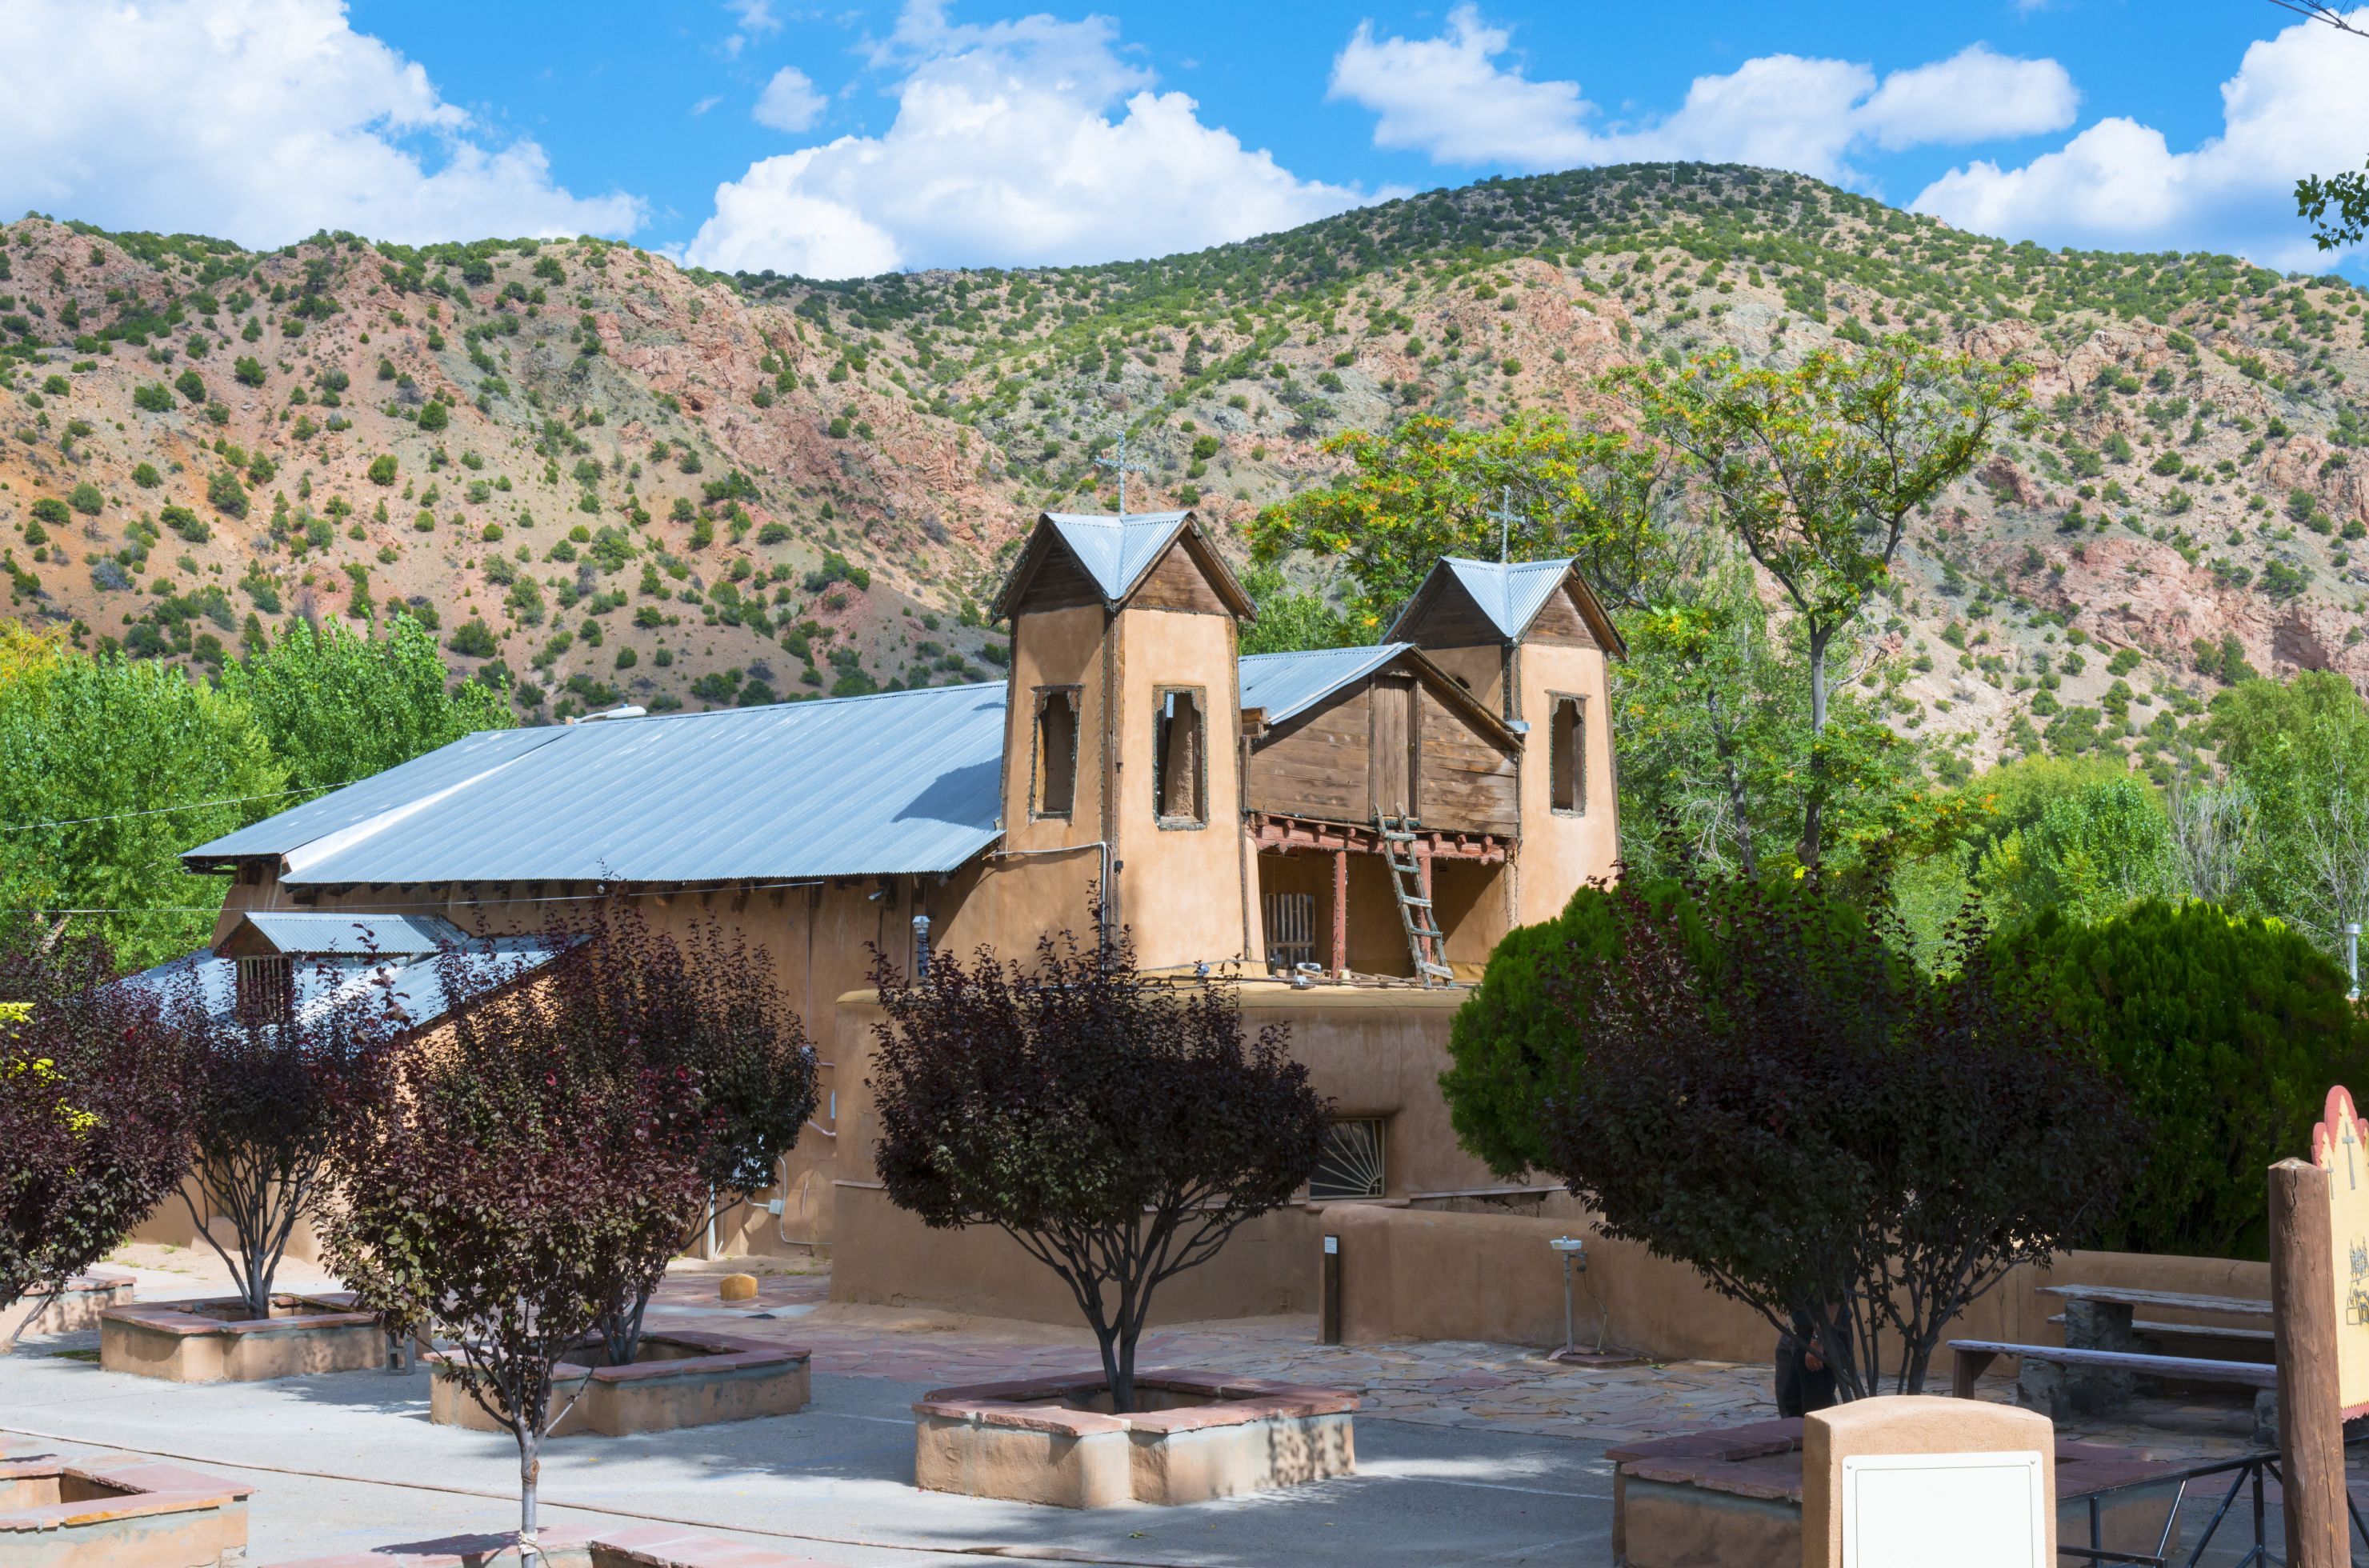 Historic Landmarks | Santa Fe County is New Mexico True | Santa Fe is ...